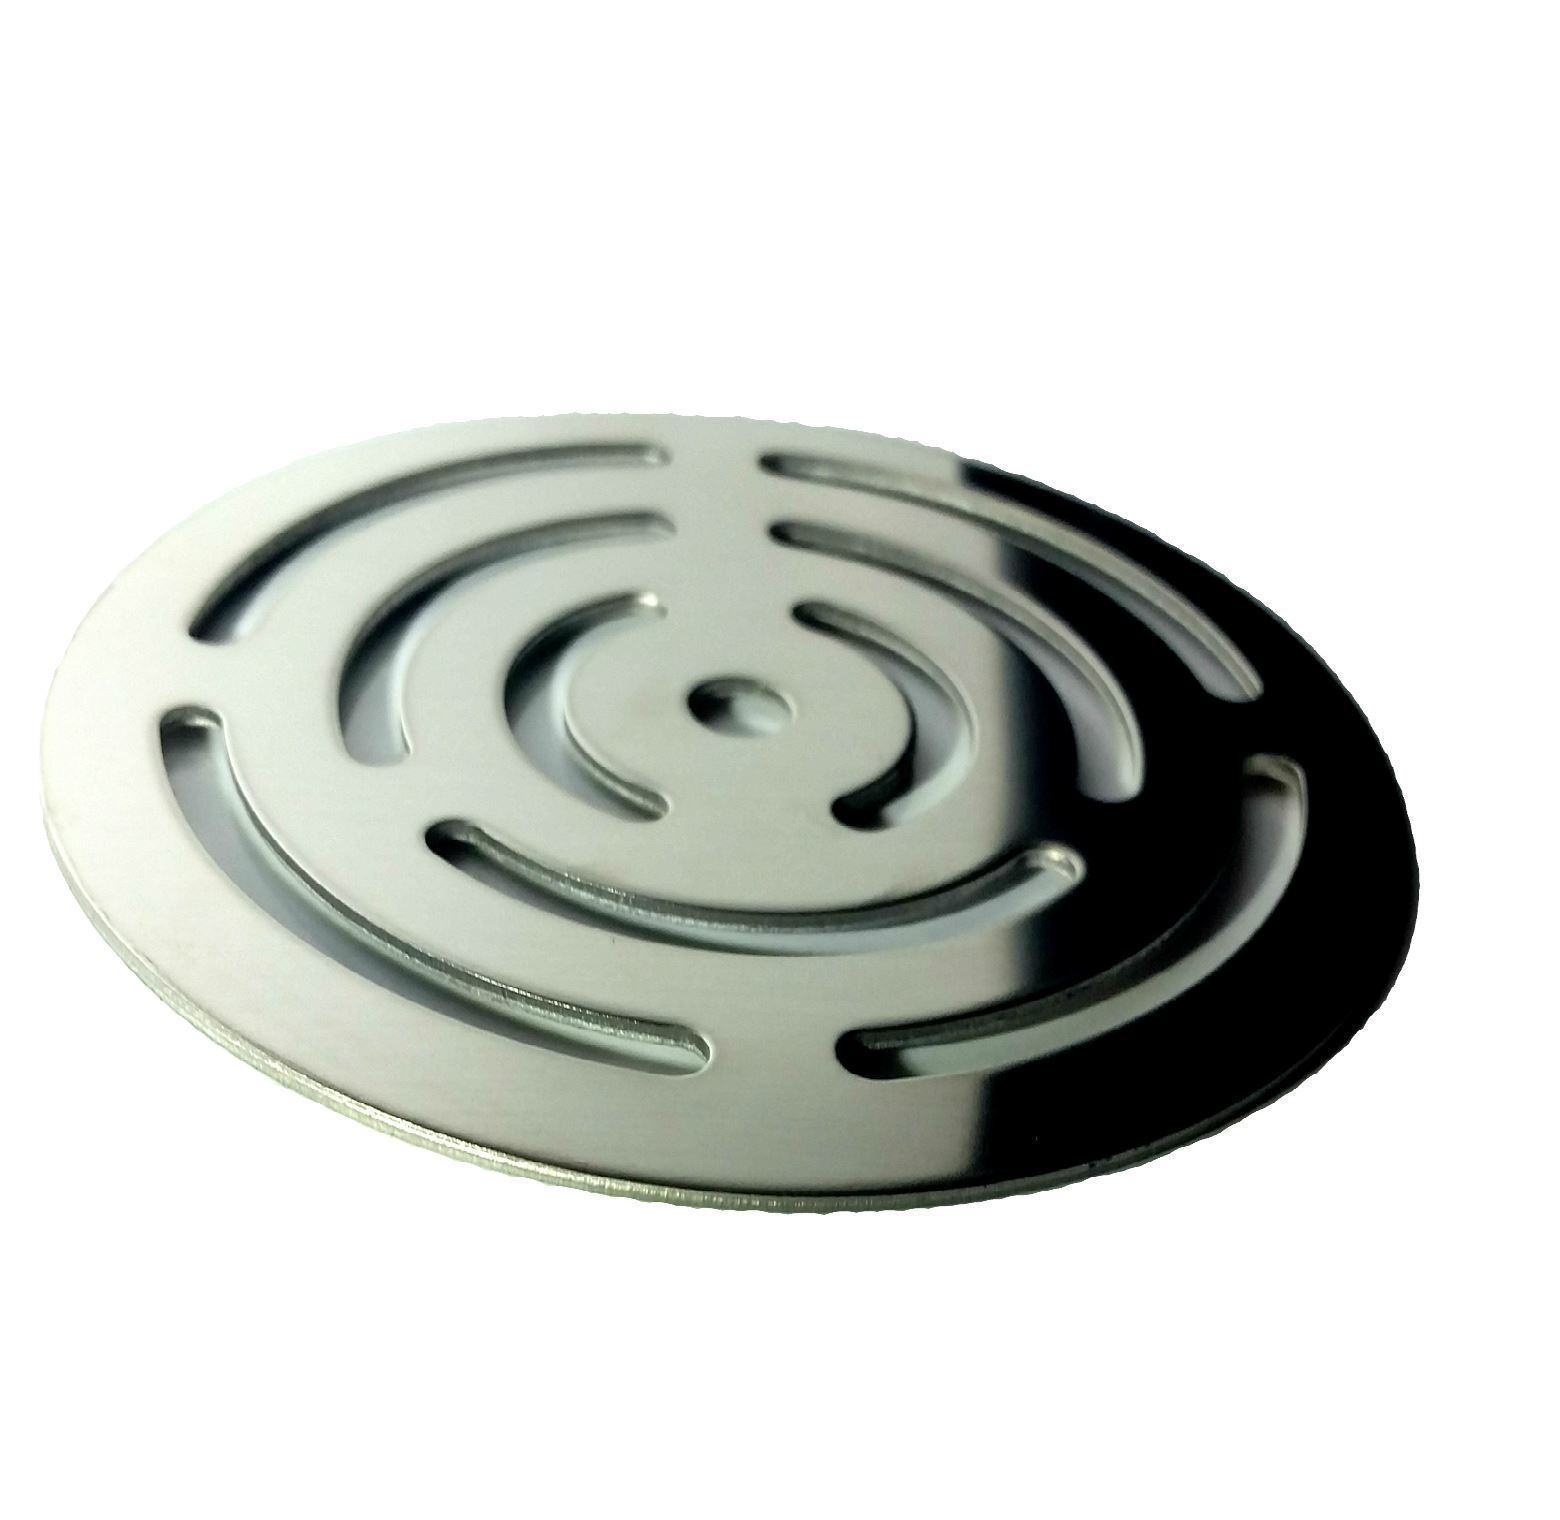 Válvula de desagüe para platos de ducha de resina pizarra 90 mm con arillo  acero inox 3 tornillos